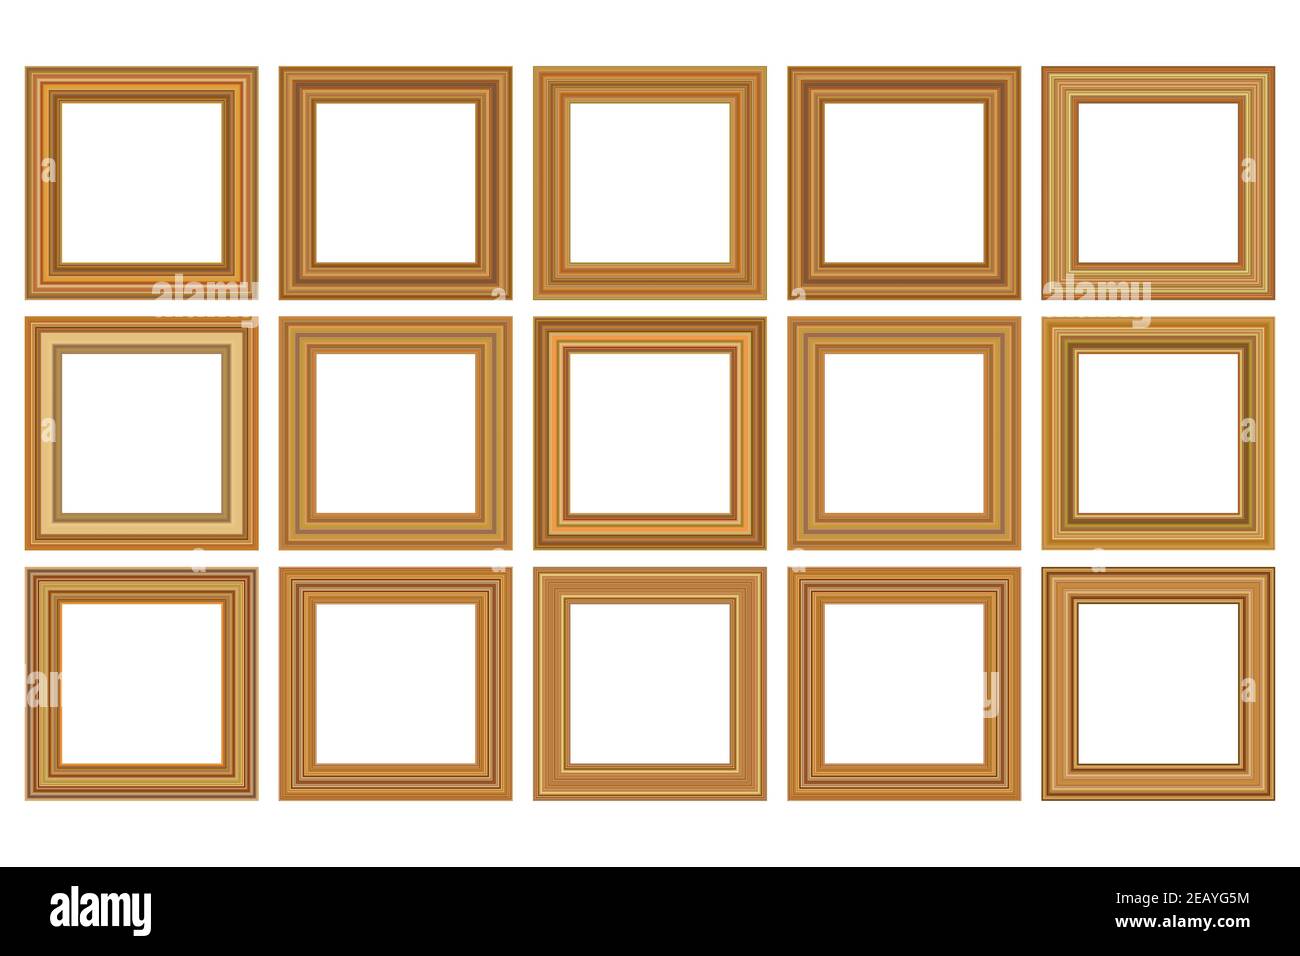 https://c8.alamy.com/comp/2EAYG5M/big-set-of-squared-golden-vintage-wooden-frame-for-your-design-vintage-cover-place-for-text-vintage-antique-gold-beautiful-rectangular-frames-2EAYG5M.jpg